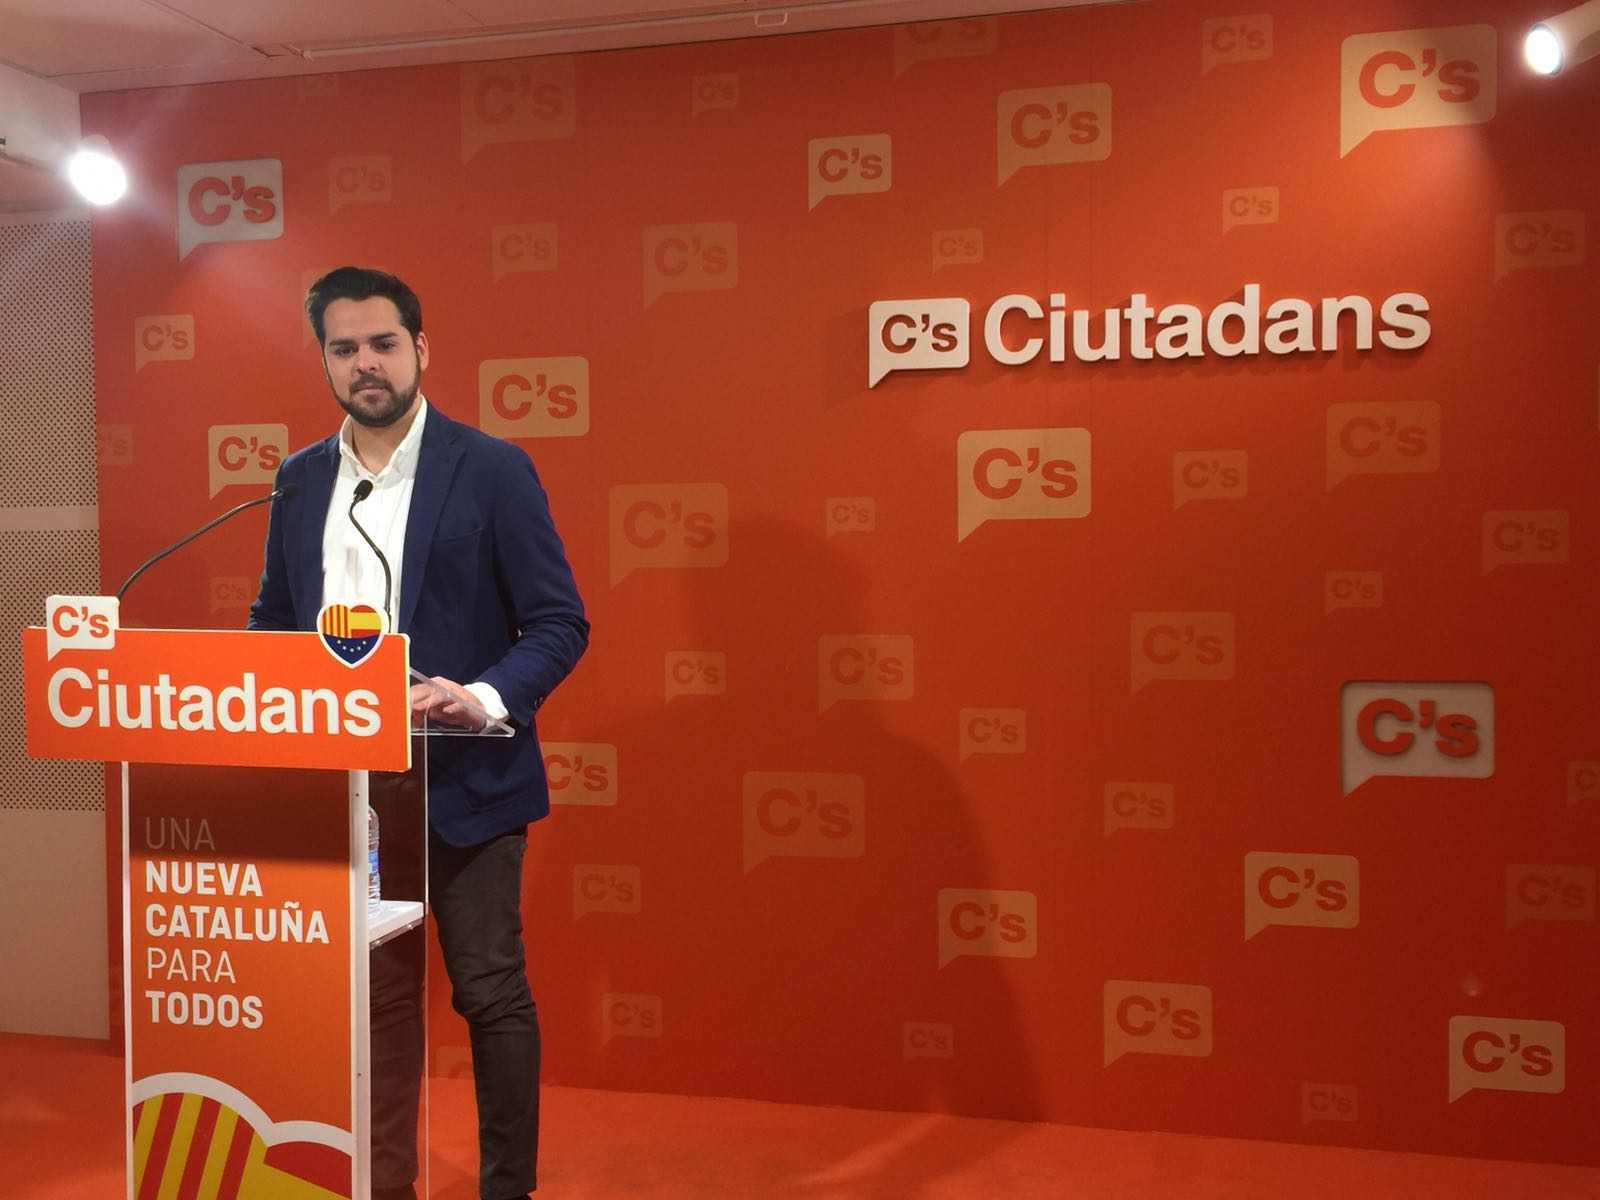 C’s tanca files amb el PSOE i colla Rajoy